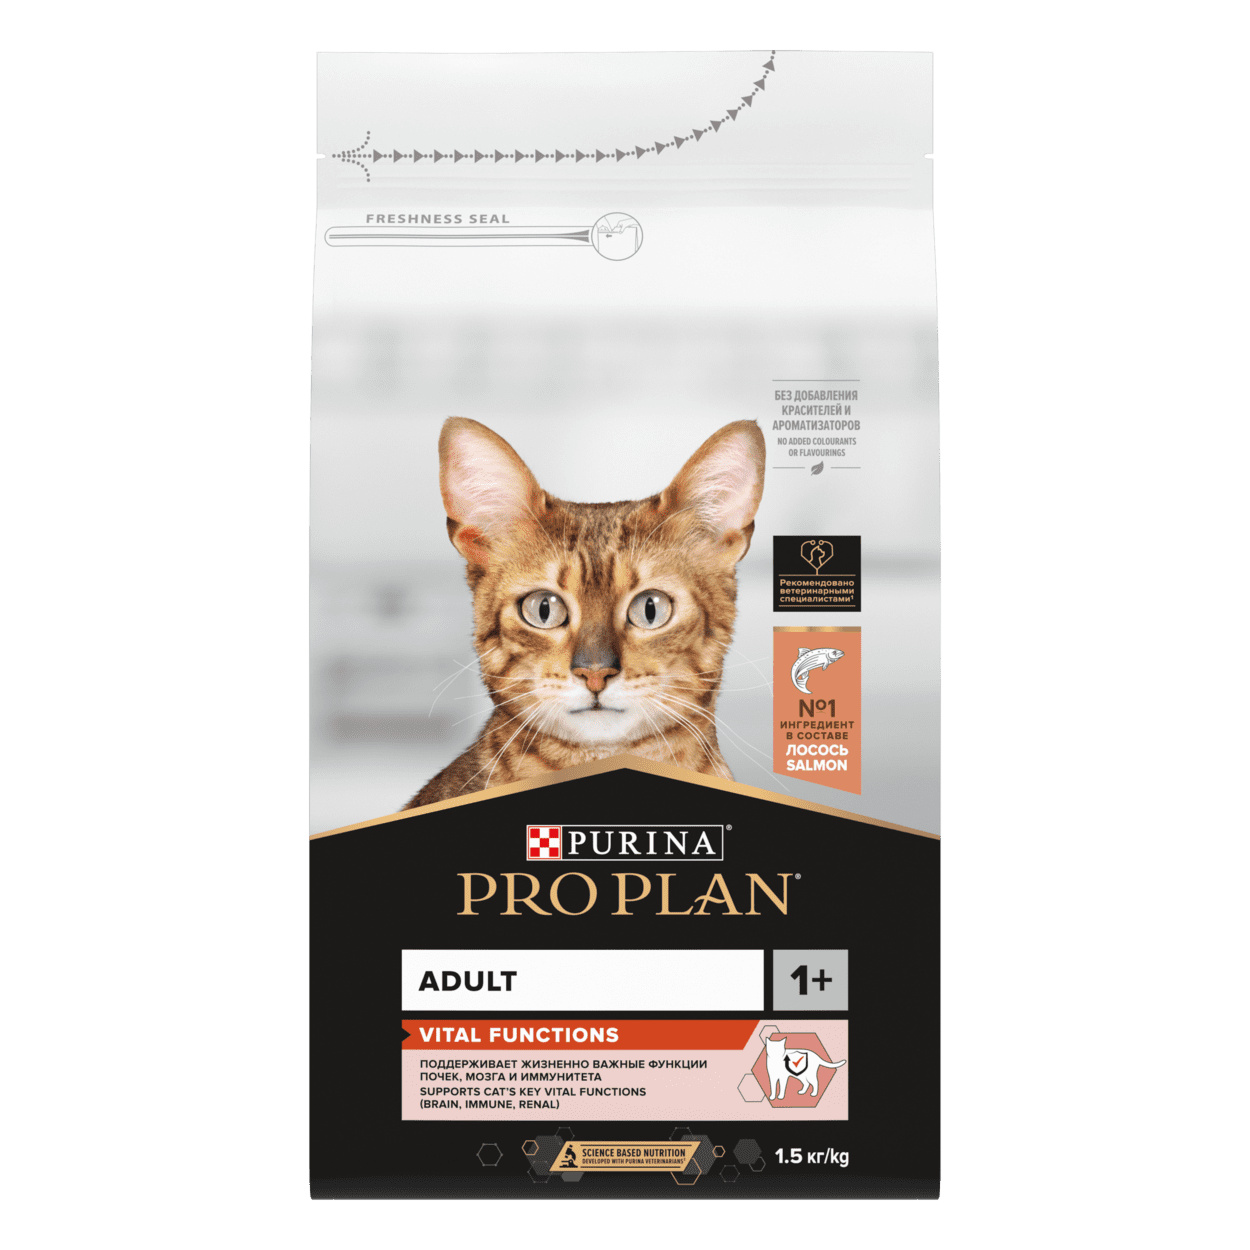 Purina Pro Plan Purina Pro Plan для взрослых кошек, с высоким содержанием лосося (1,5 кг) цена и фото